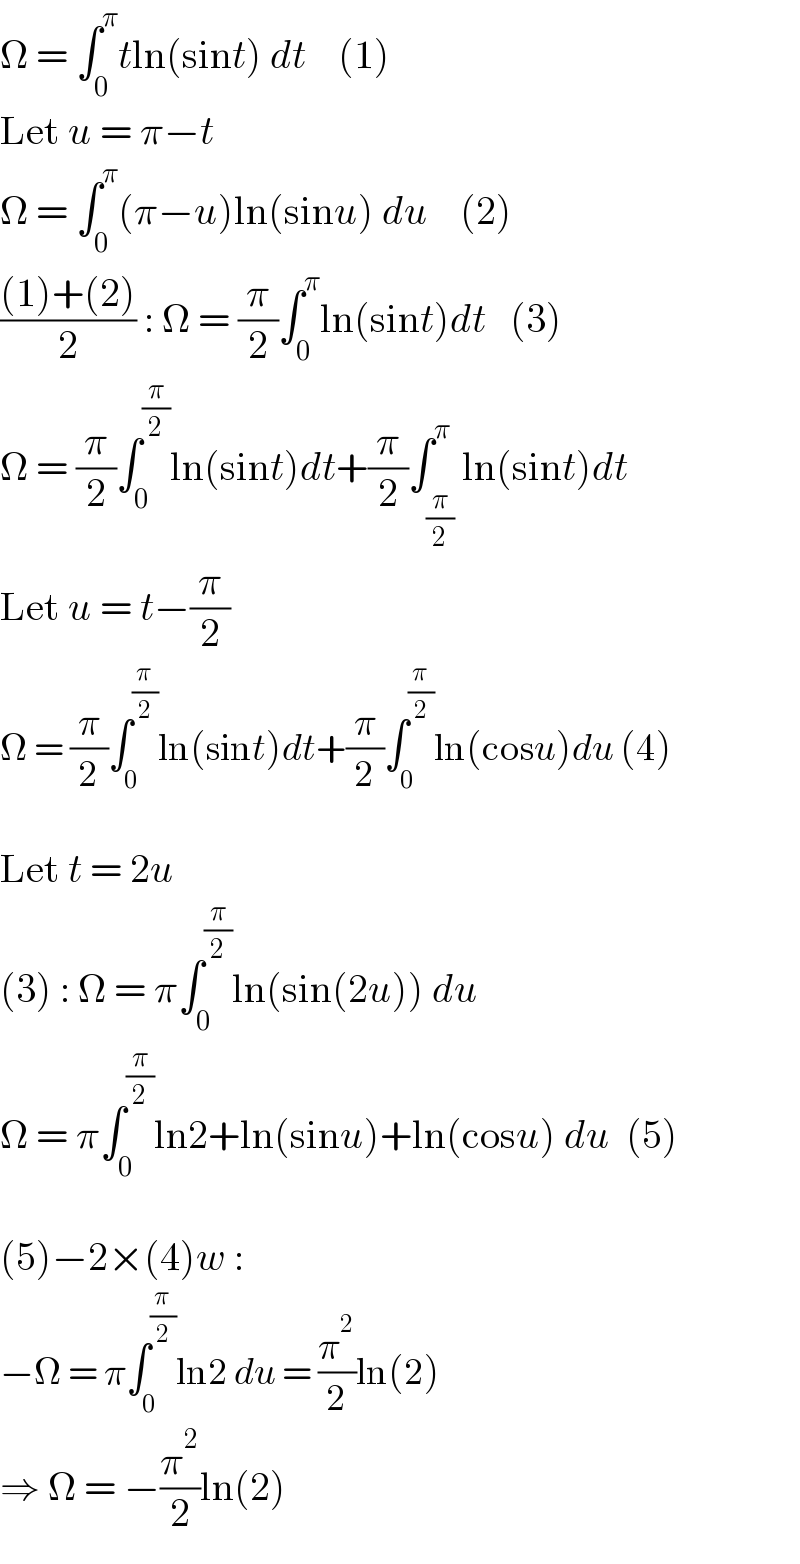 Ω = ∫_0 ^π tln(sint) dt    (1)  Let u = π−t  Ω = ∫_0 ^π (π−u)ln(sinu) du    (2)  (((1)+(2))/2) : Ω = (π/2)∫_0 ^π ln(sint)dt   (3)  Ω = (π/2)∫_0 ^(π/2) ln(sint)dt+(π/2)∫_(π/2) ^π ln(sint)dt  Let u = t−(π/2)  Ω = (π/2)∫_0 ^(π/2) ln(sint)dt+(π/2)∫_0 ^(π/2) ln(cosu)du (4)    Let t = 2u  (3) : Ω = π∫_0 ^(π/2) ln(sin(2u)) du  Ω = π∫_0 ^(π/2) ln2+ln(sinu)+ln(cosu) du  (5)    (5)−2×(4)w :  −Ω = π∫_0 ^(π/2) ln2 du = (π^2 /2)ln(2)  ⇒ Ω = −(π^2 /2)ln(2)  